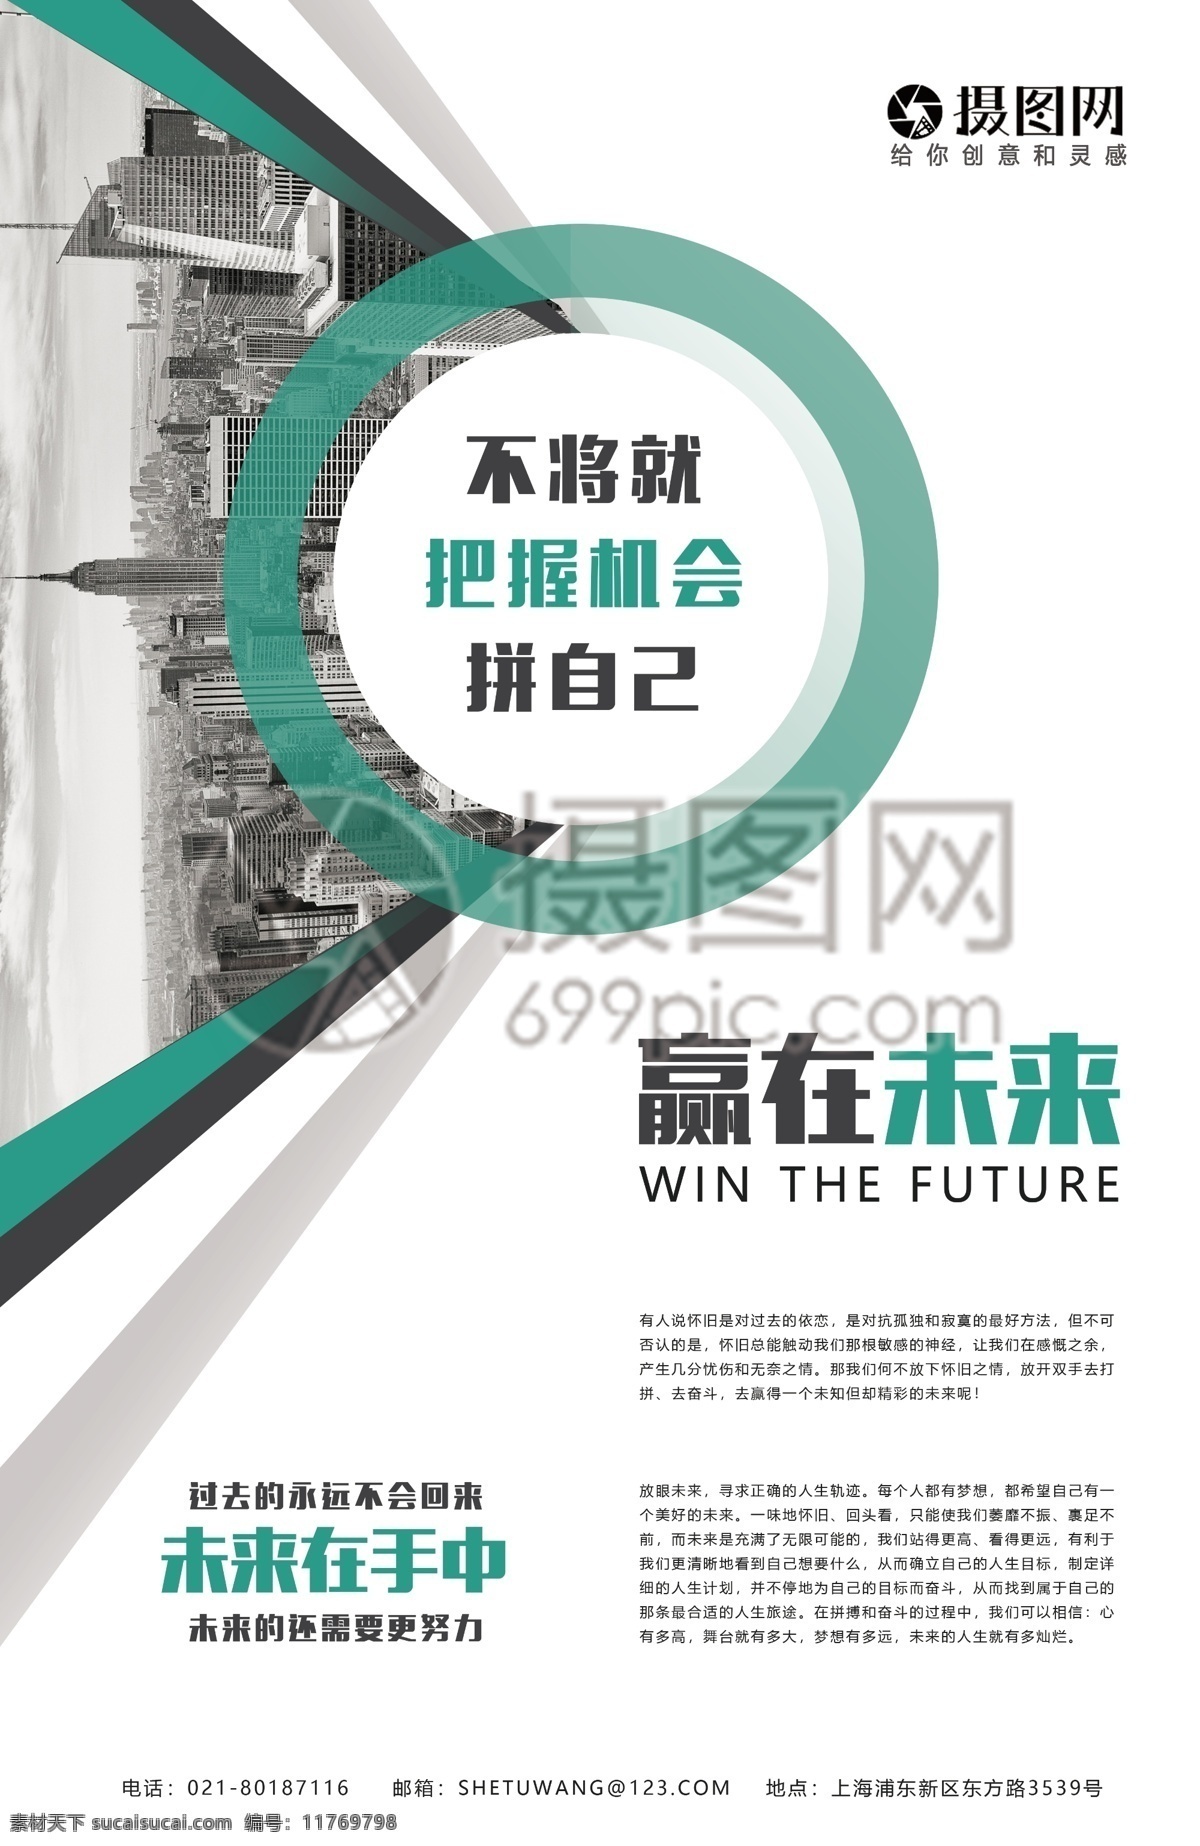 赢 未来 企业 文化 海报 赢在未来 励志 勇于突破 展望未来 正能量 努力 企业文化海报